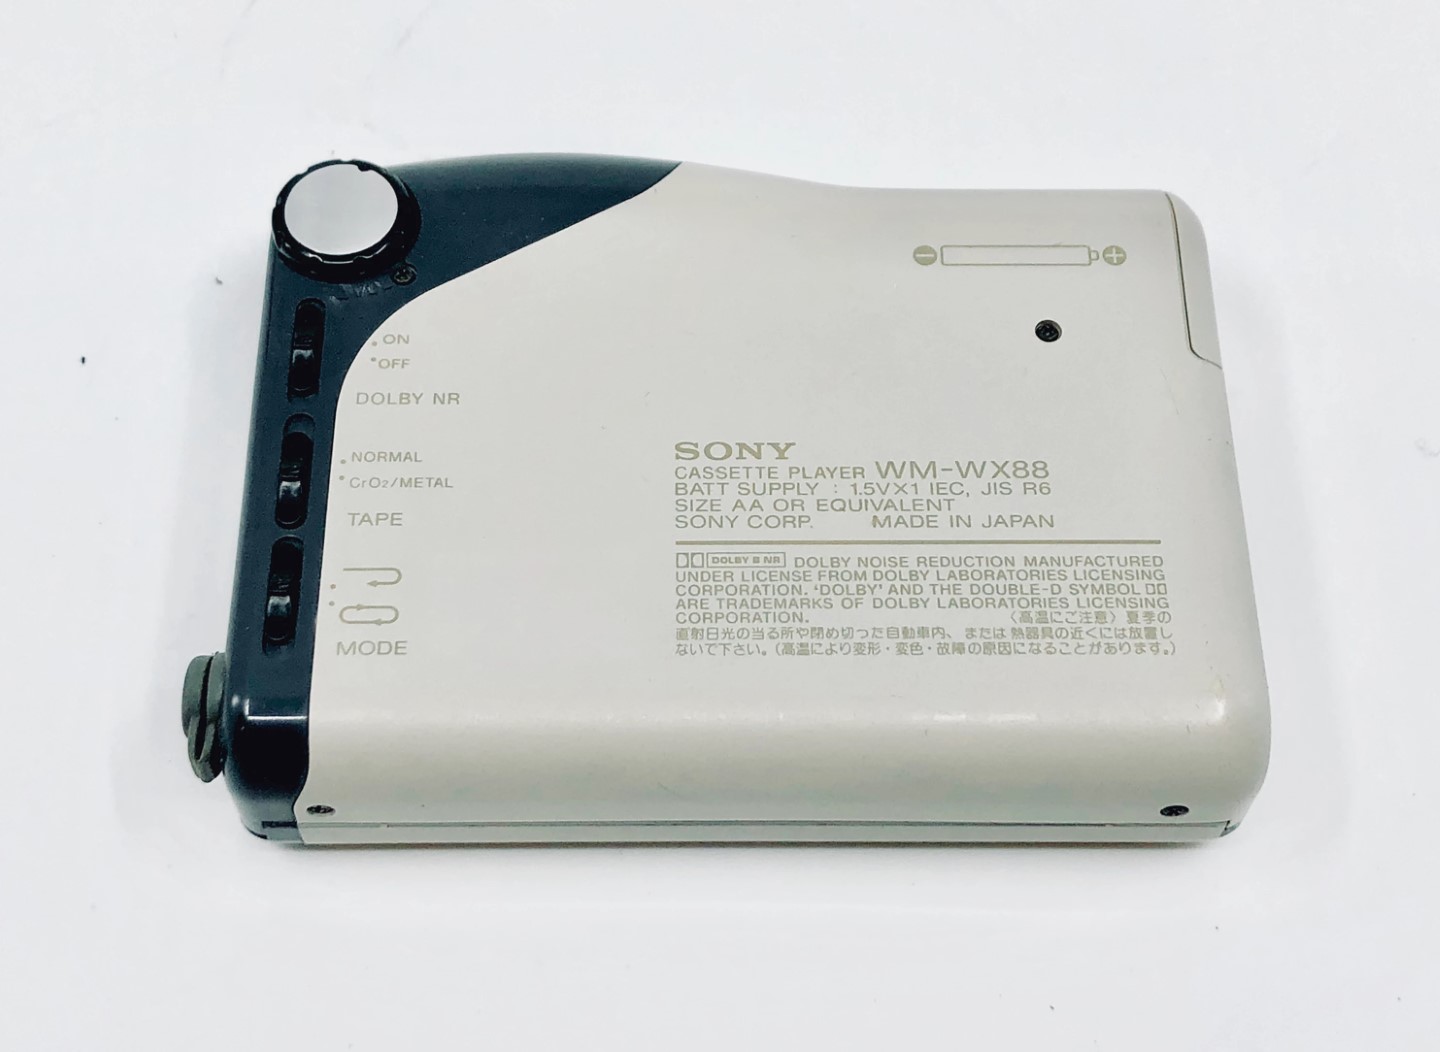 Sony-WX-88-7